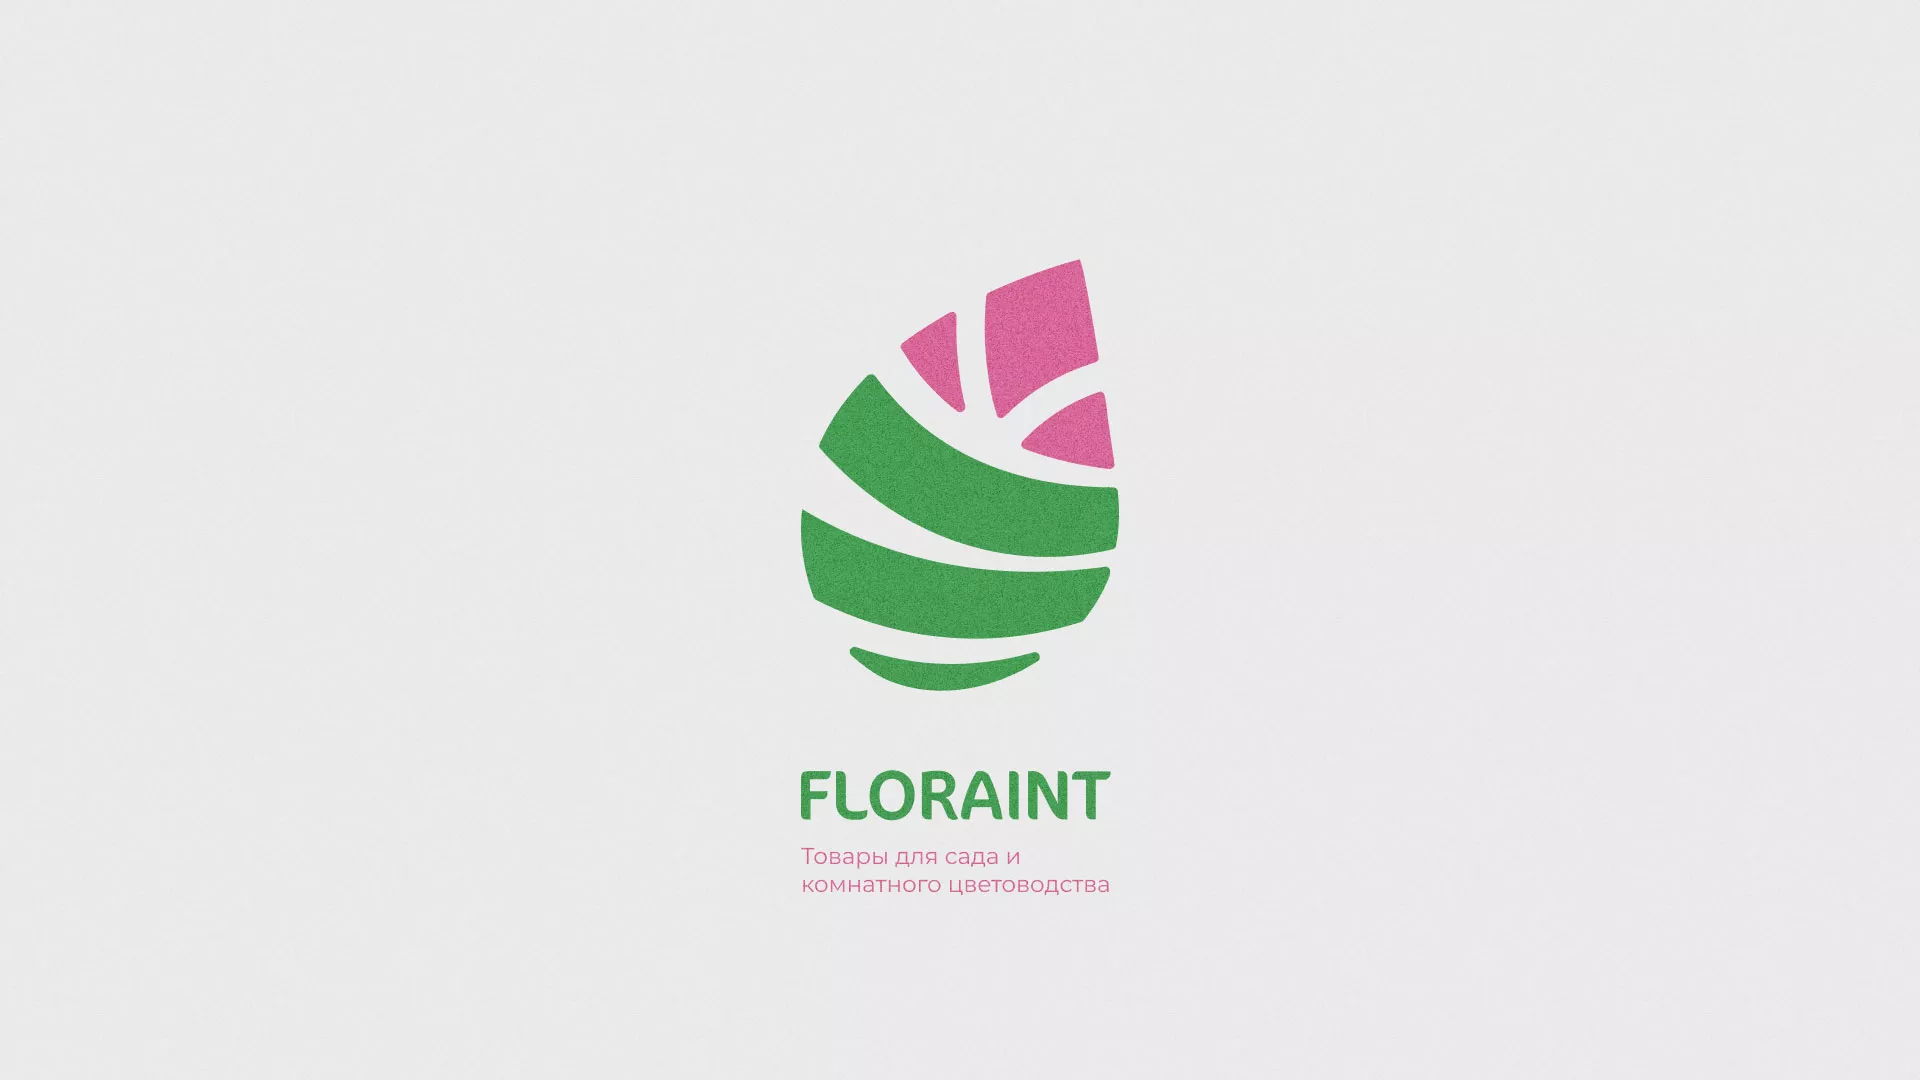 Разработка оформления профиля Instagram для магазина «Floraint» в Лосино-Петровске